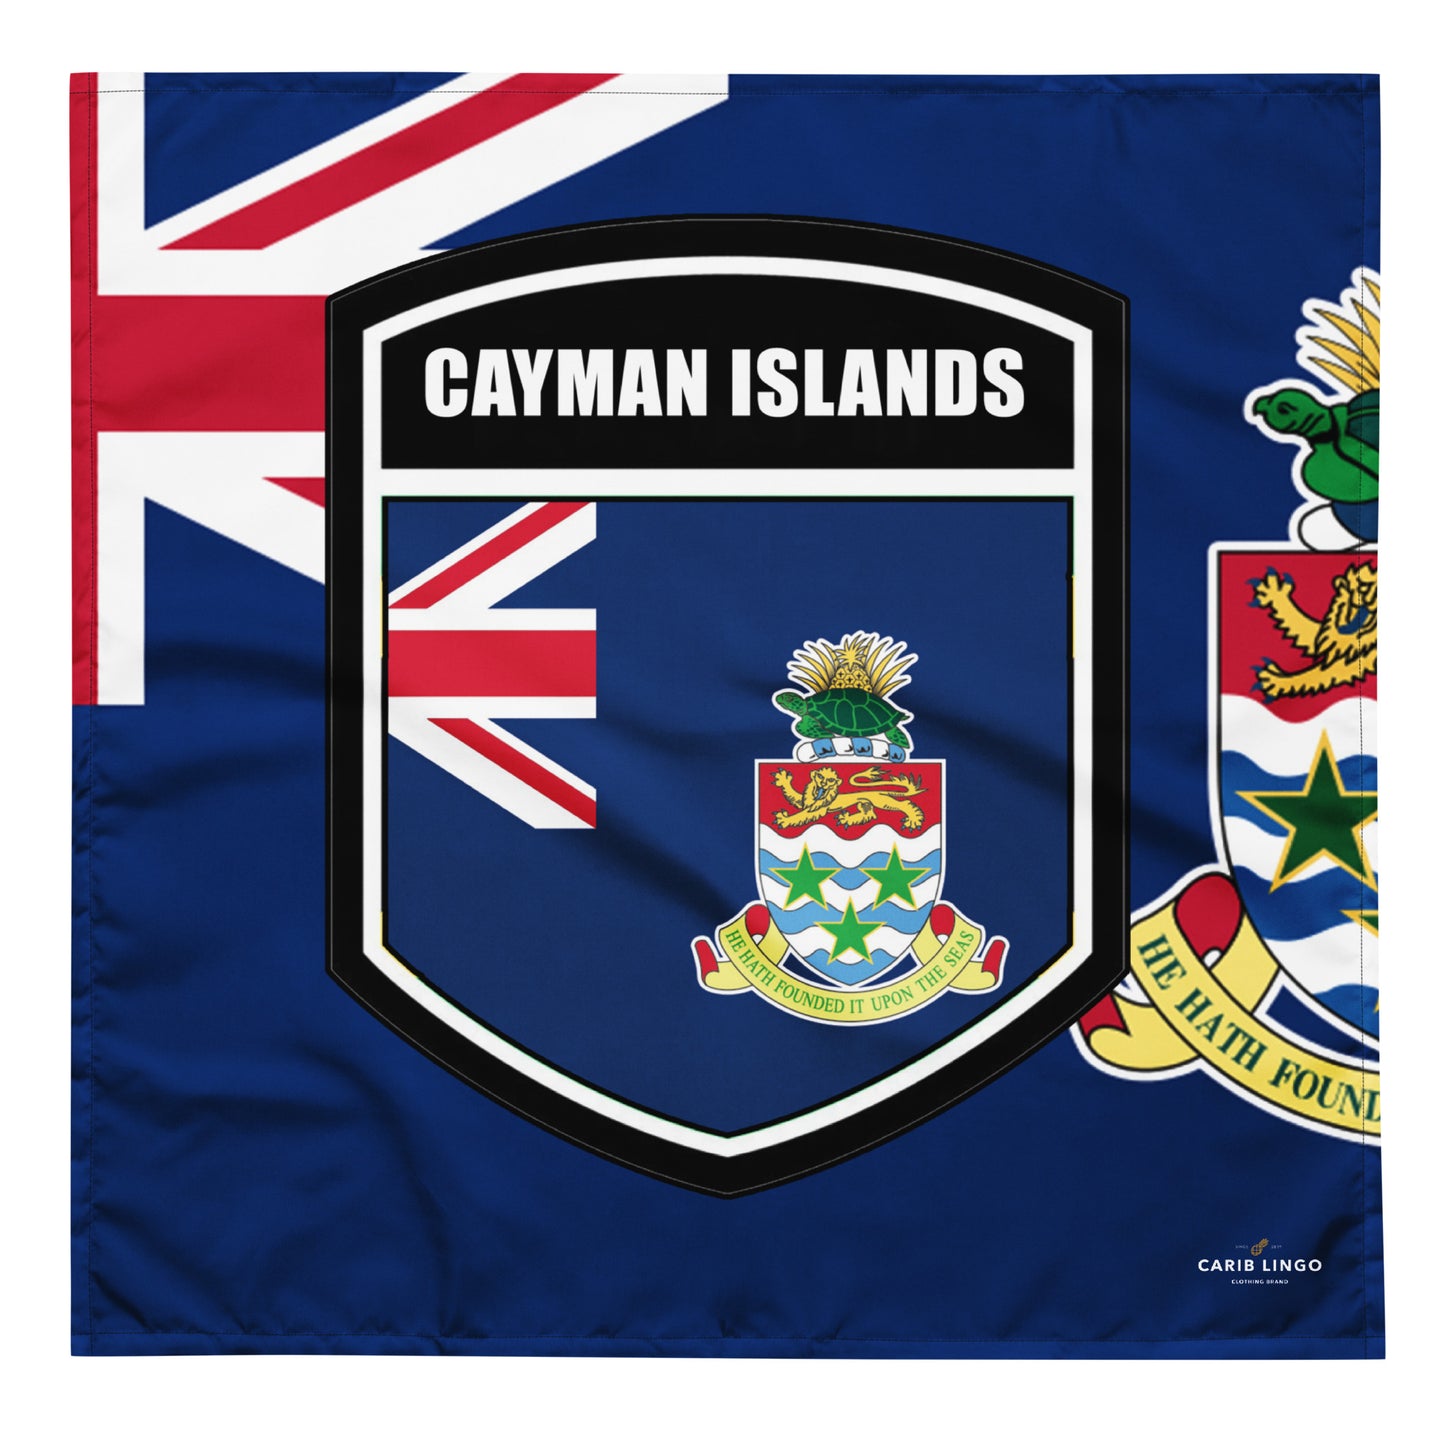 Cayman Islands bandana